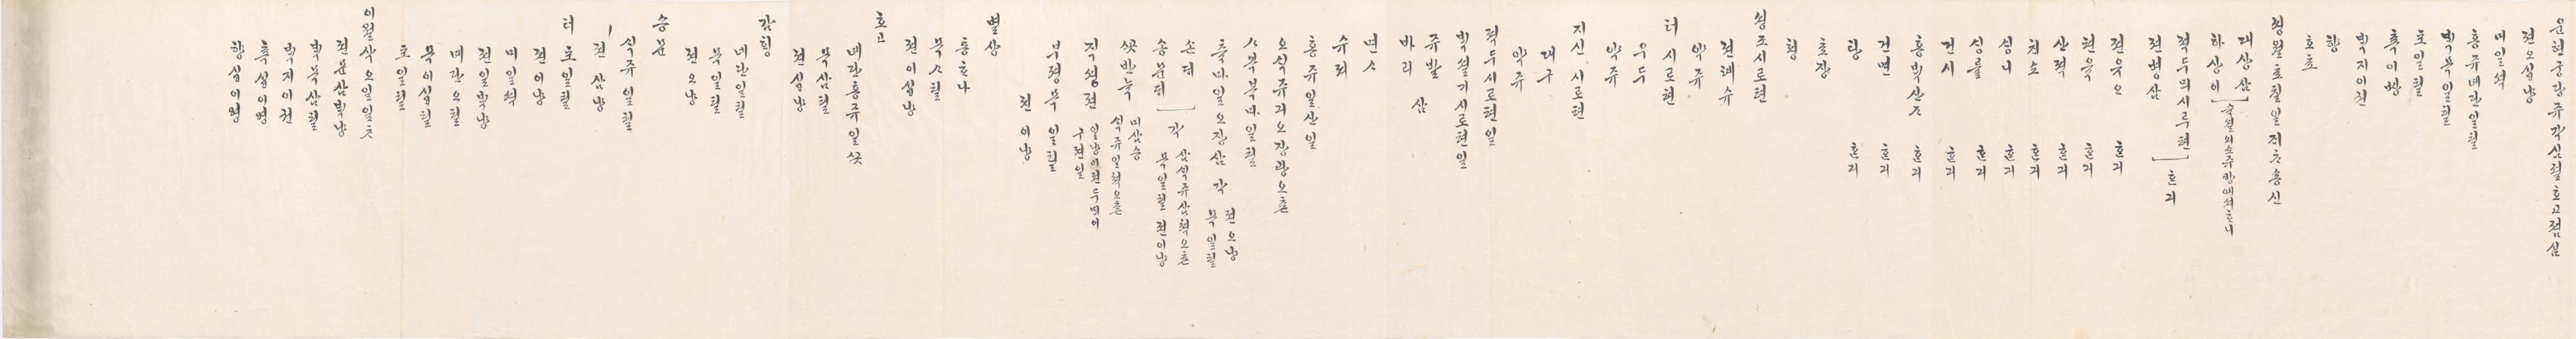 2_1879년 12월 왕세자 천연두 시 점심 차배 발기 4.jpg